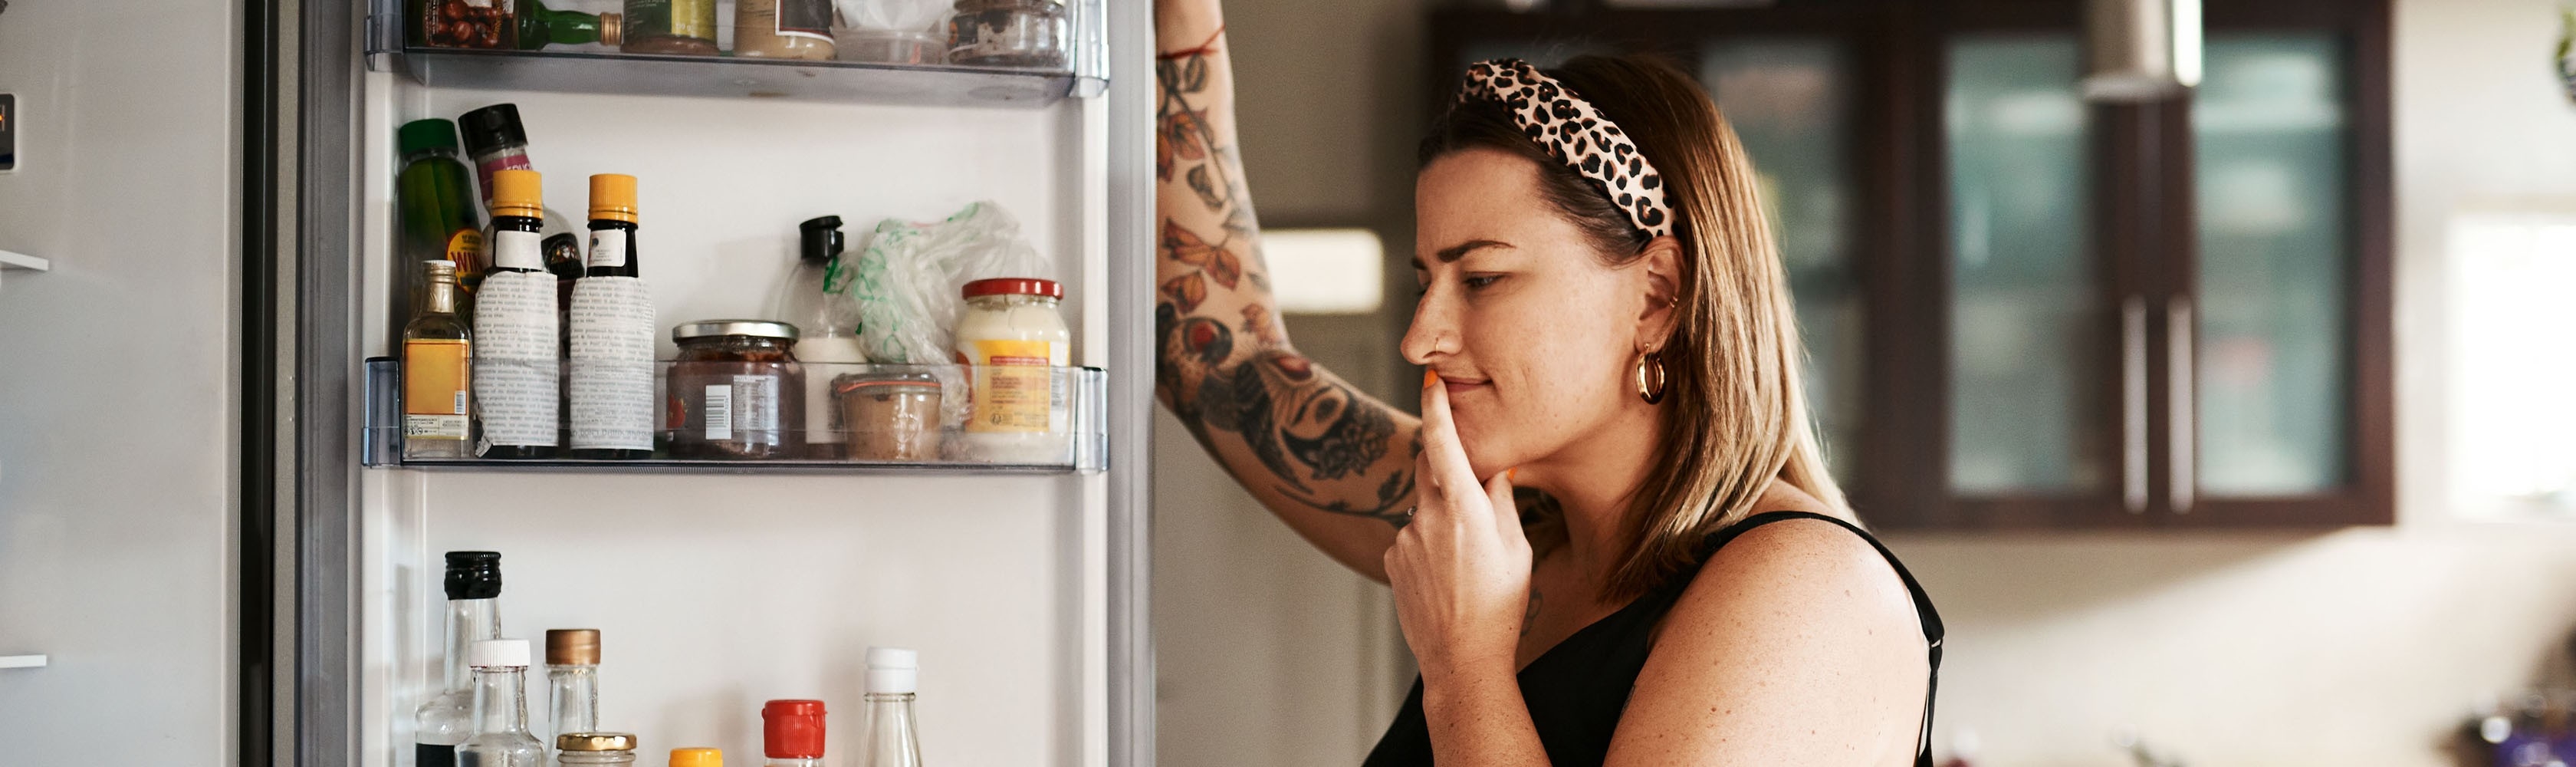 Devant son frigo, une femme se demande quels changements apporter à son alimentation pour manger plus sainement.